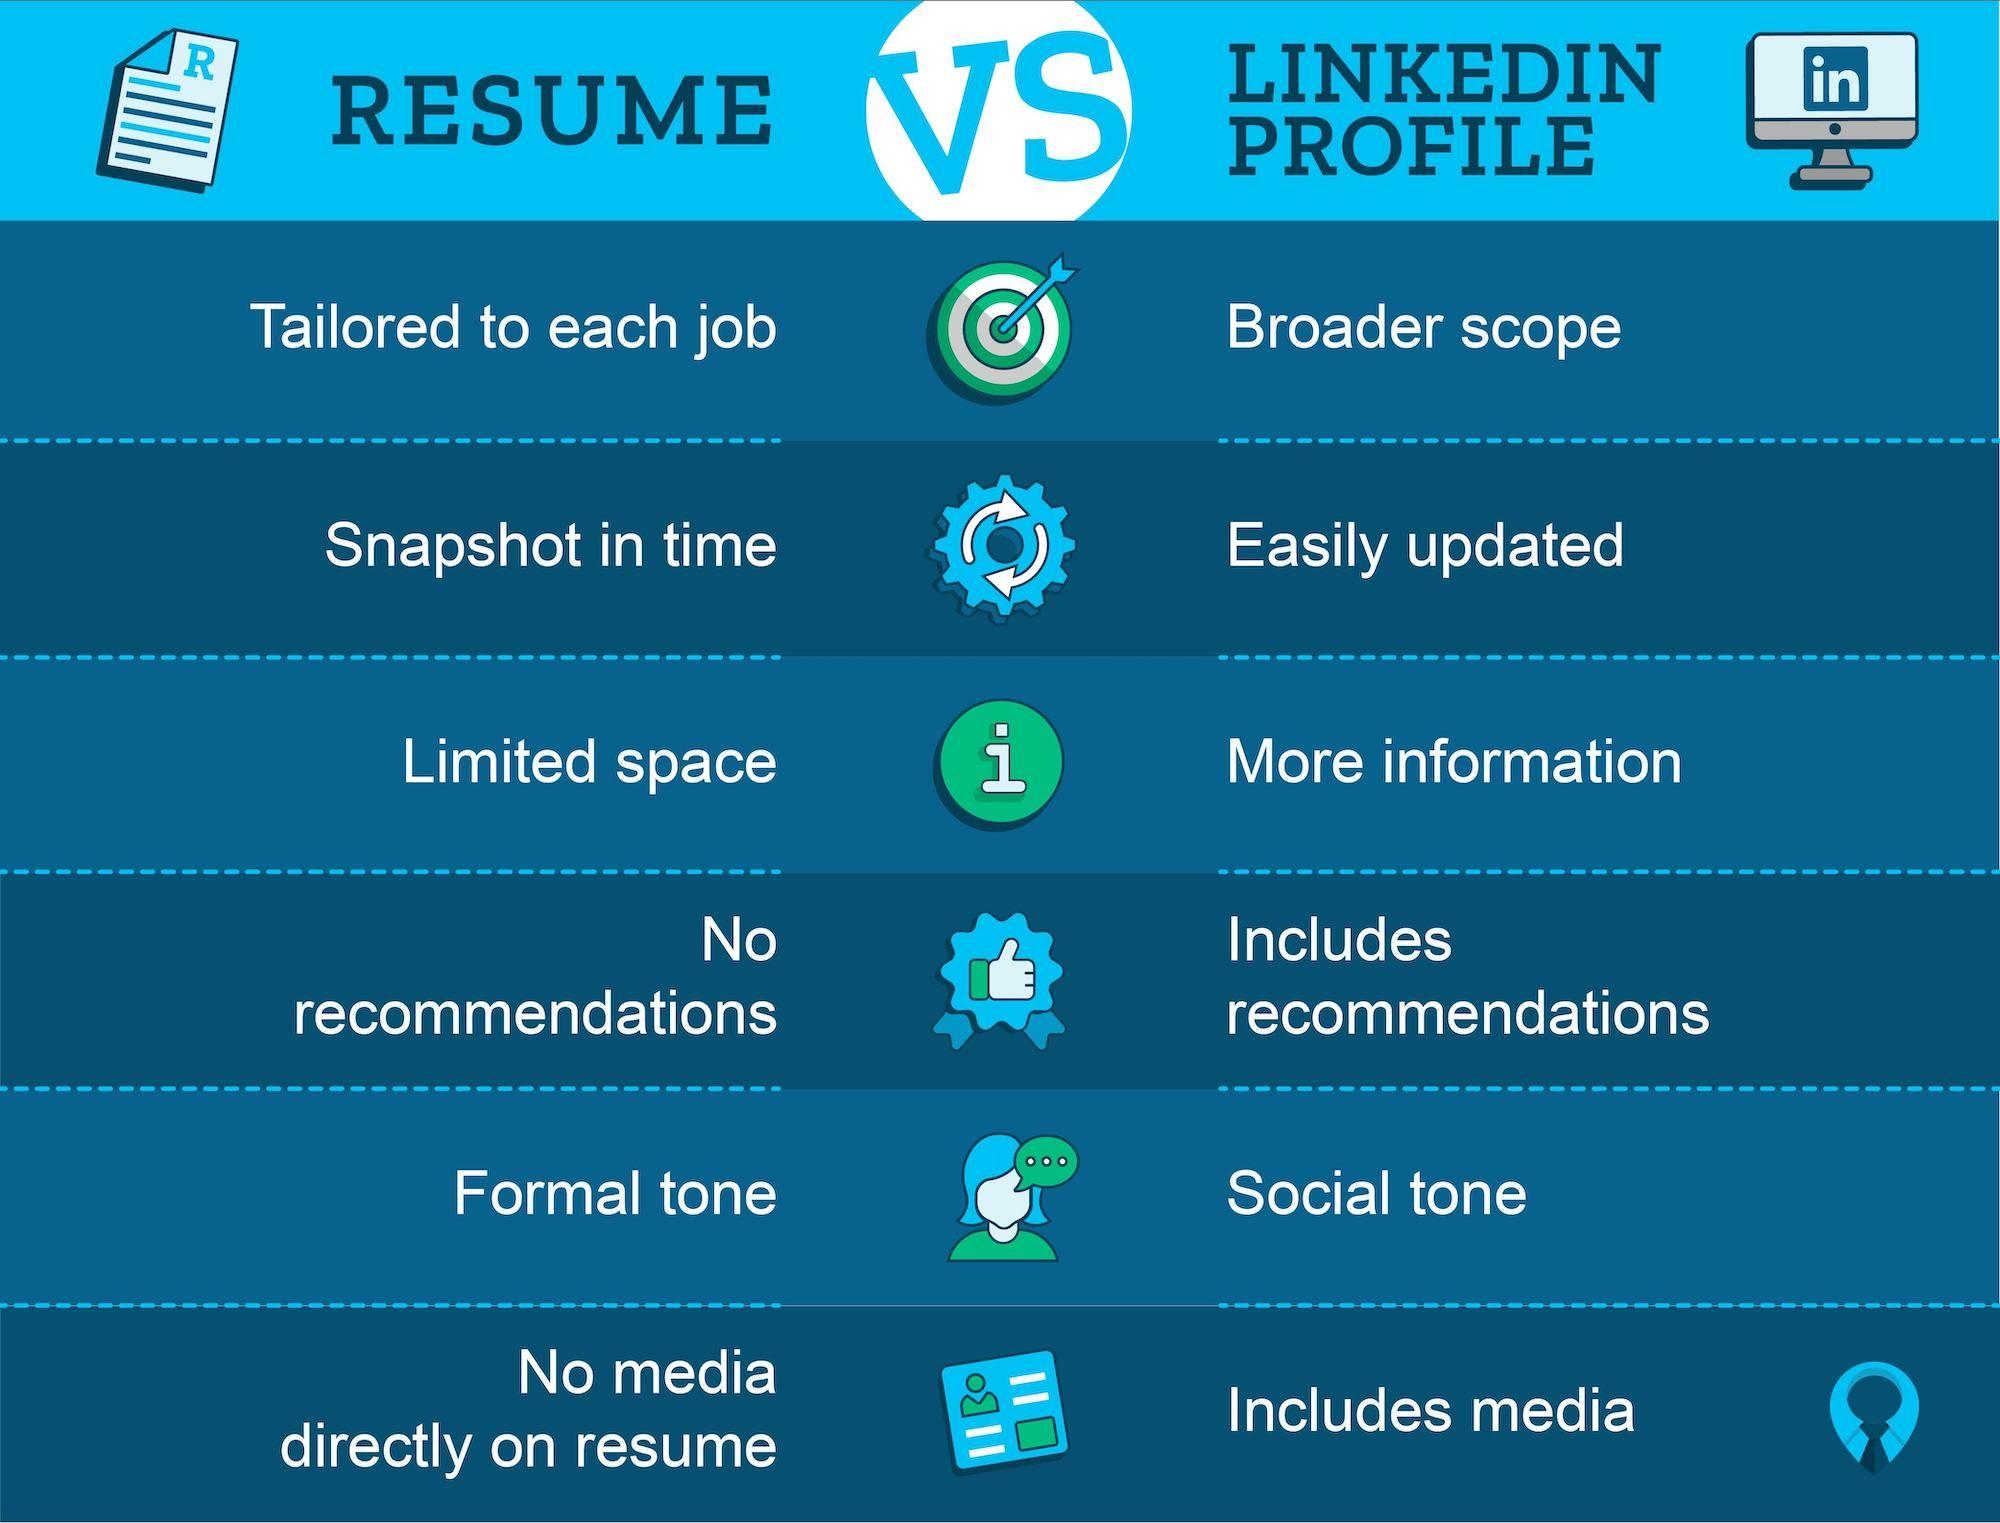 Resume vs LinkedIn Profile